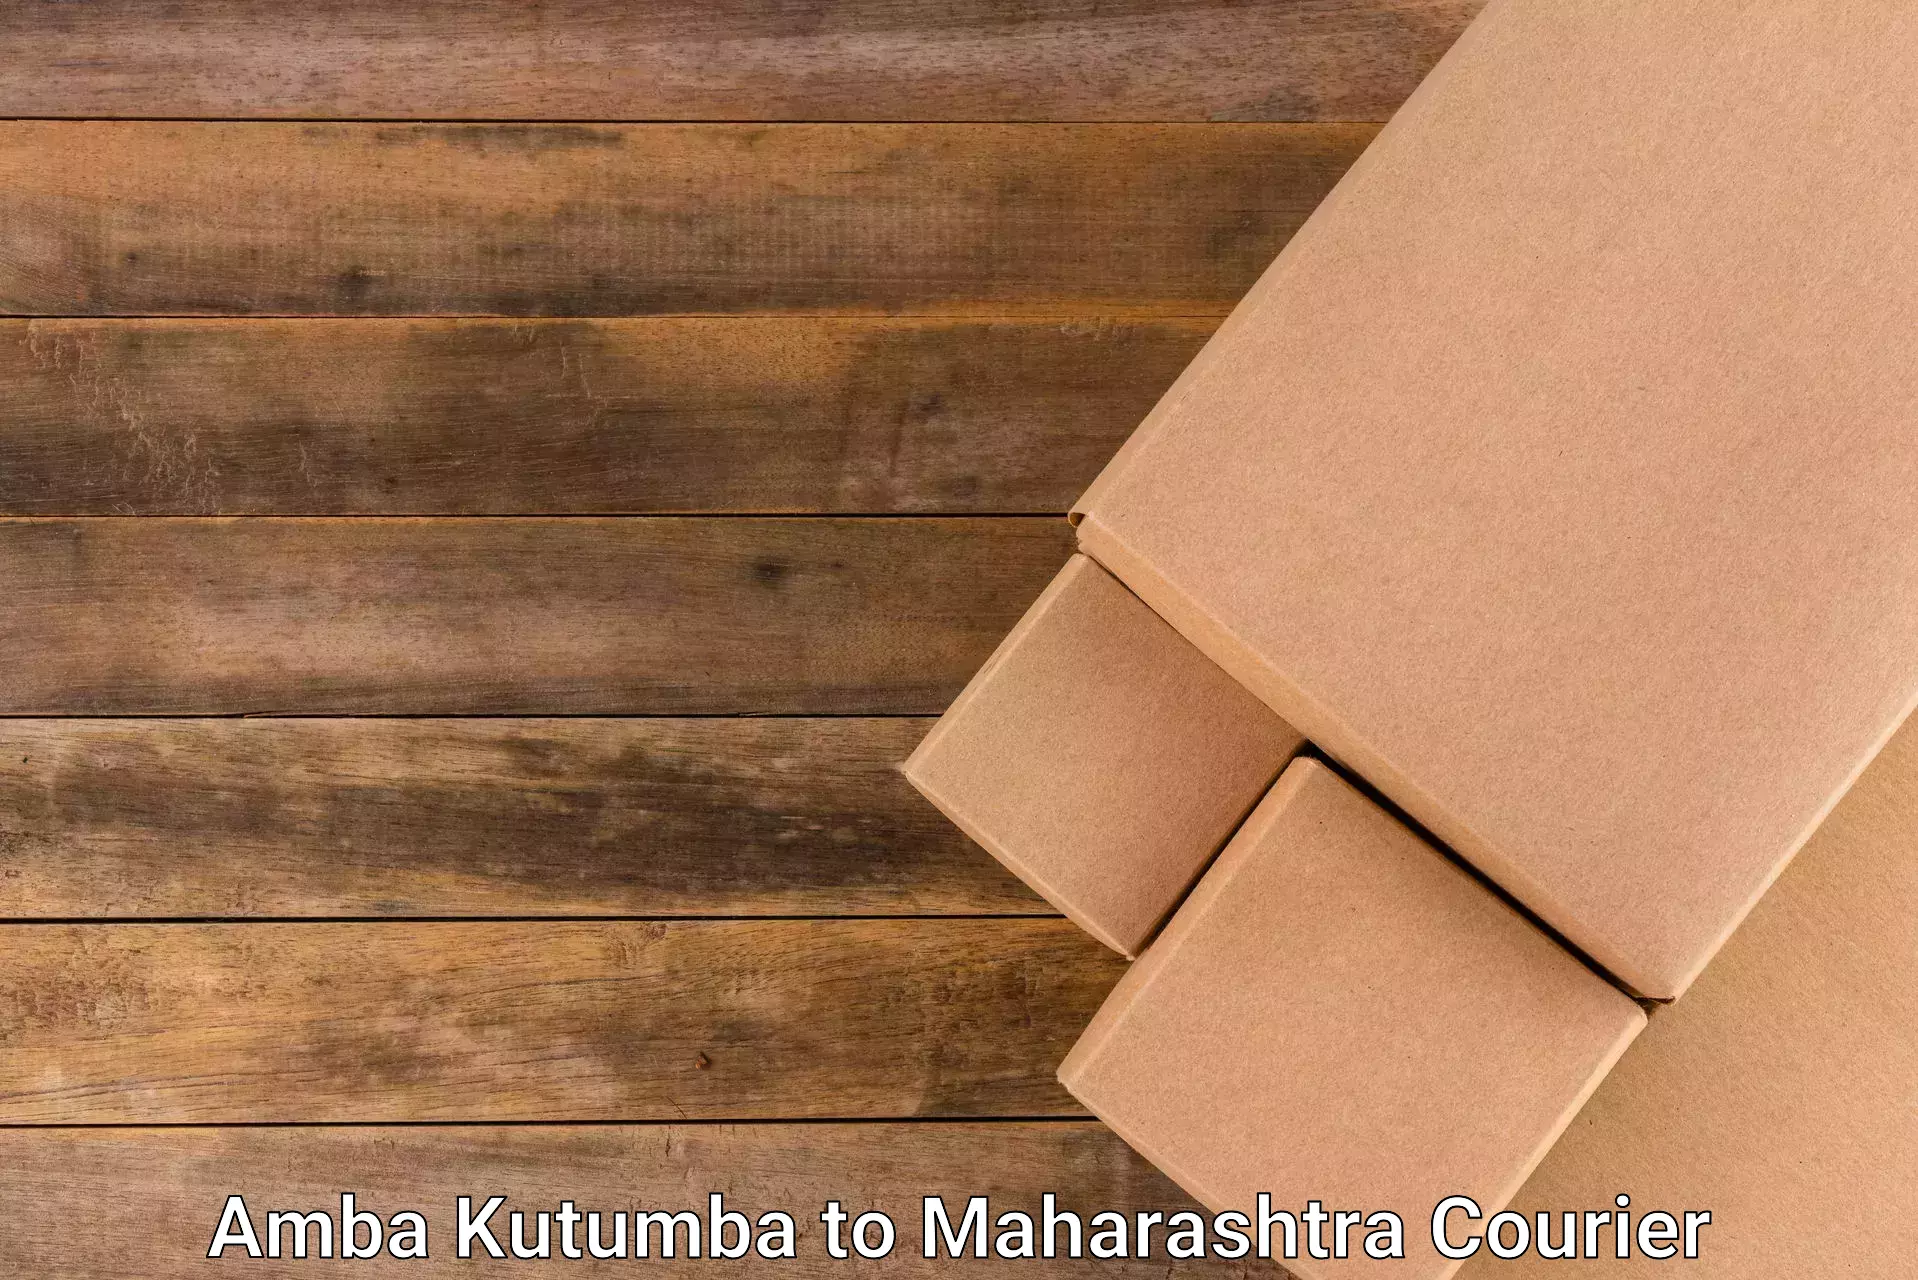 Streamlined delivery processes Amba Kutumba to Maharashtra